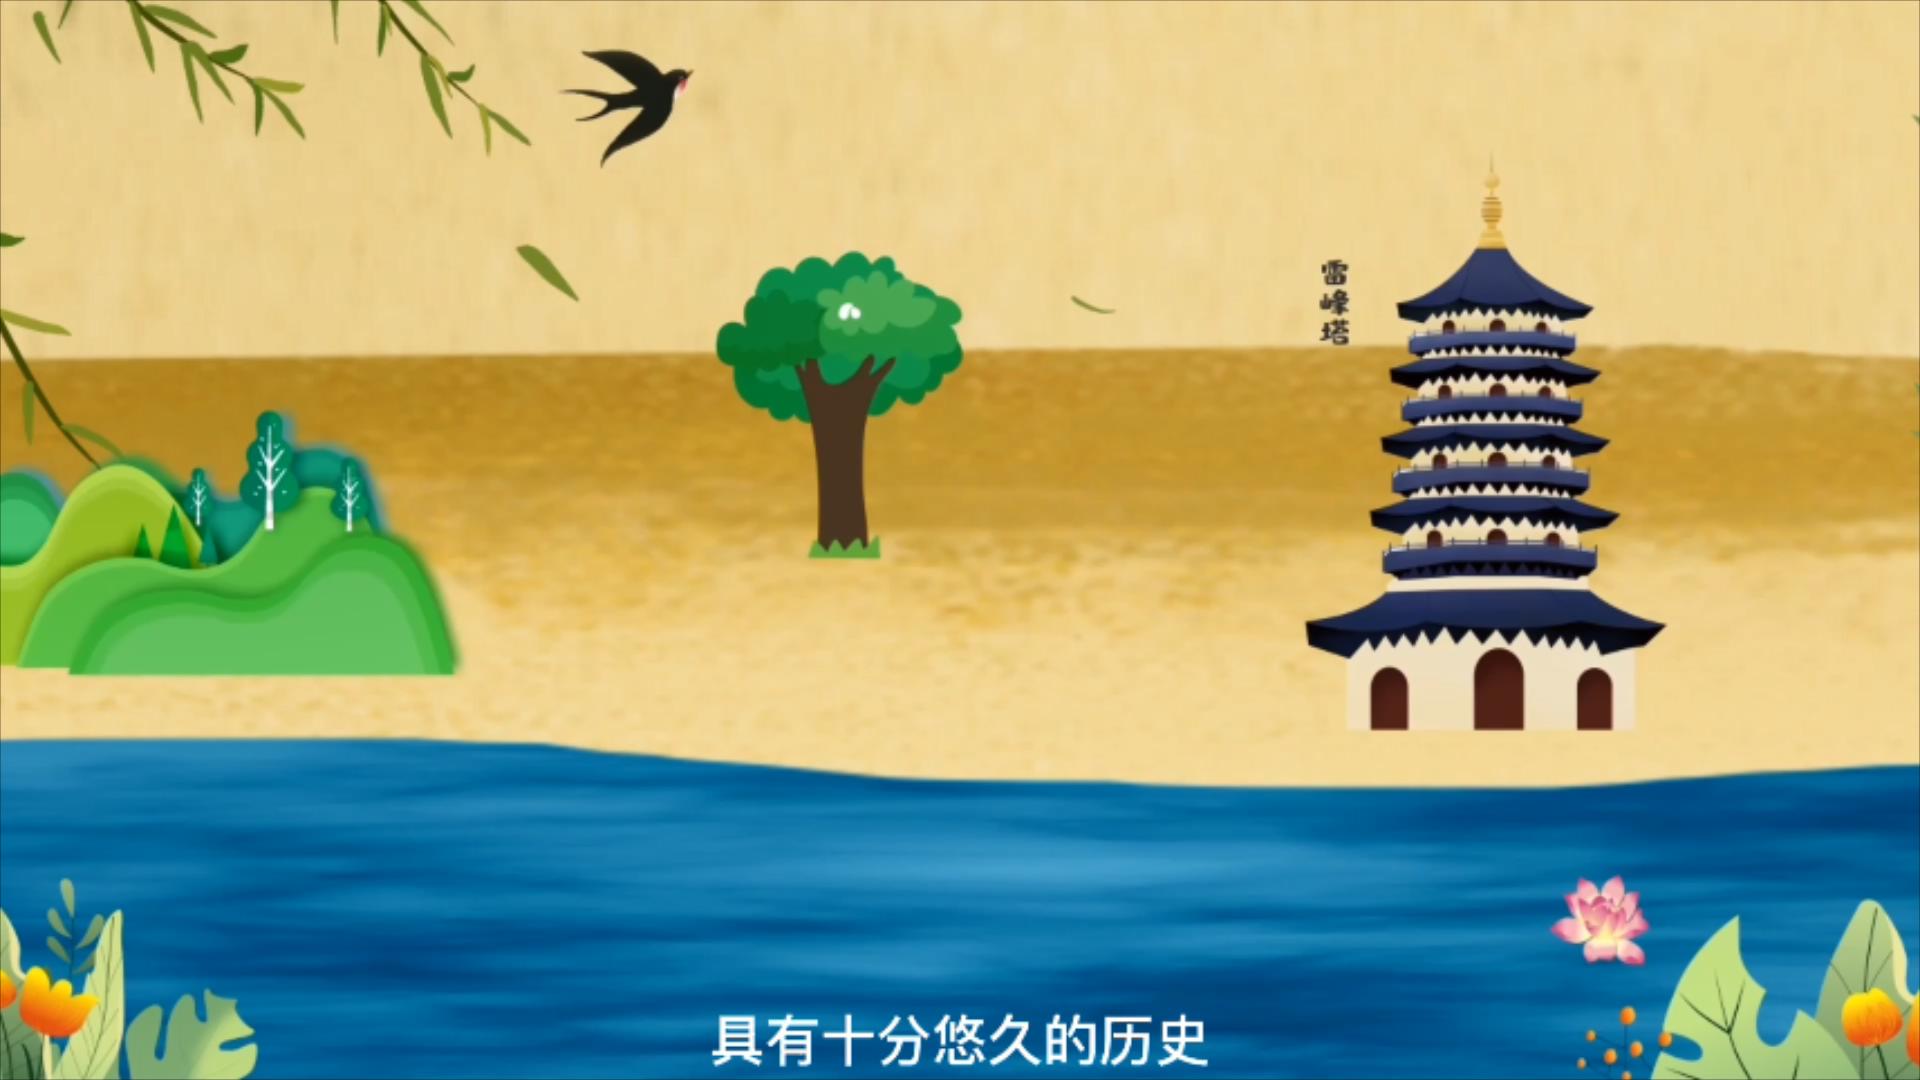 其他竞赛作品——穿越古今的京杭运河